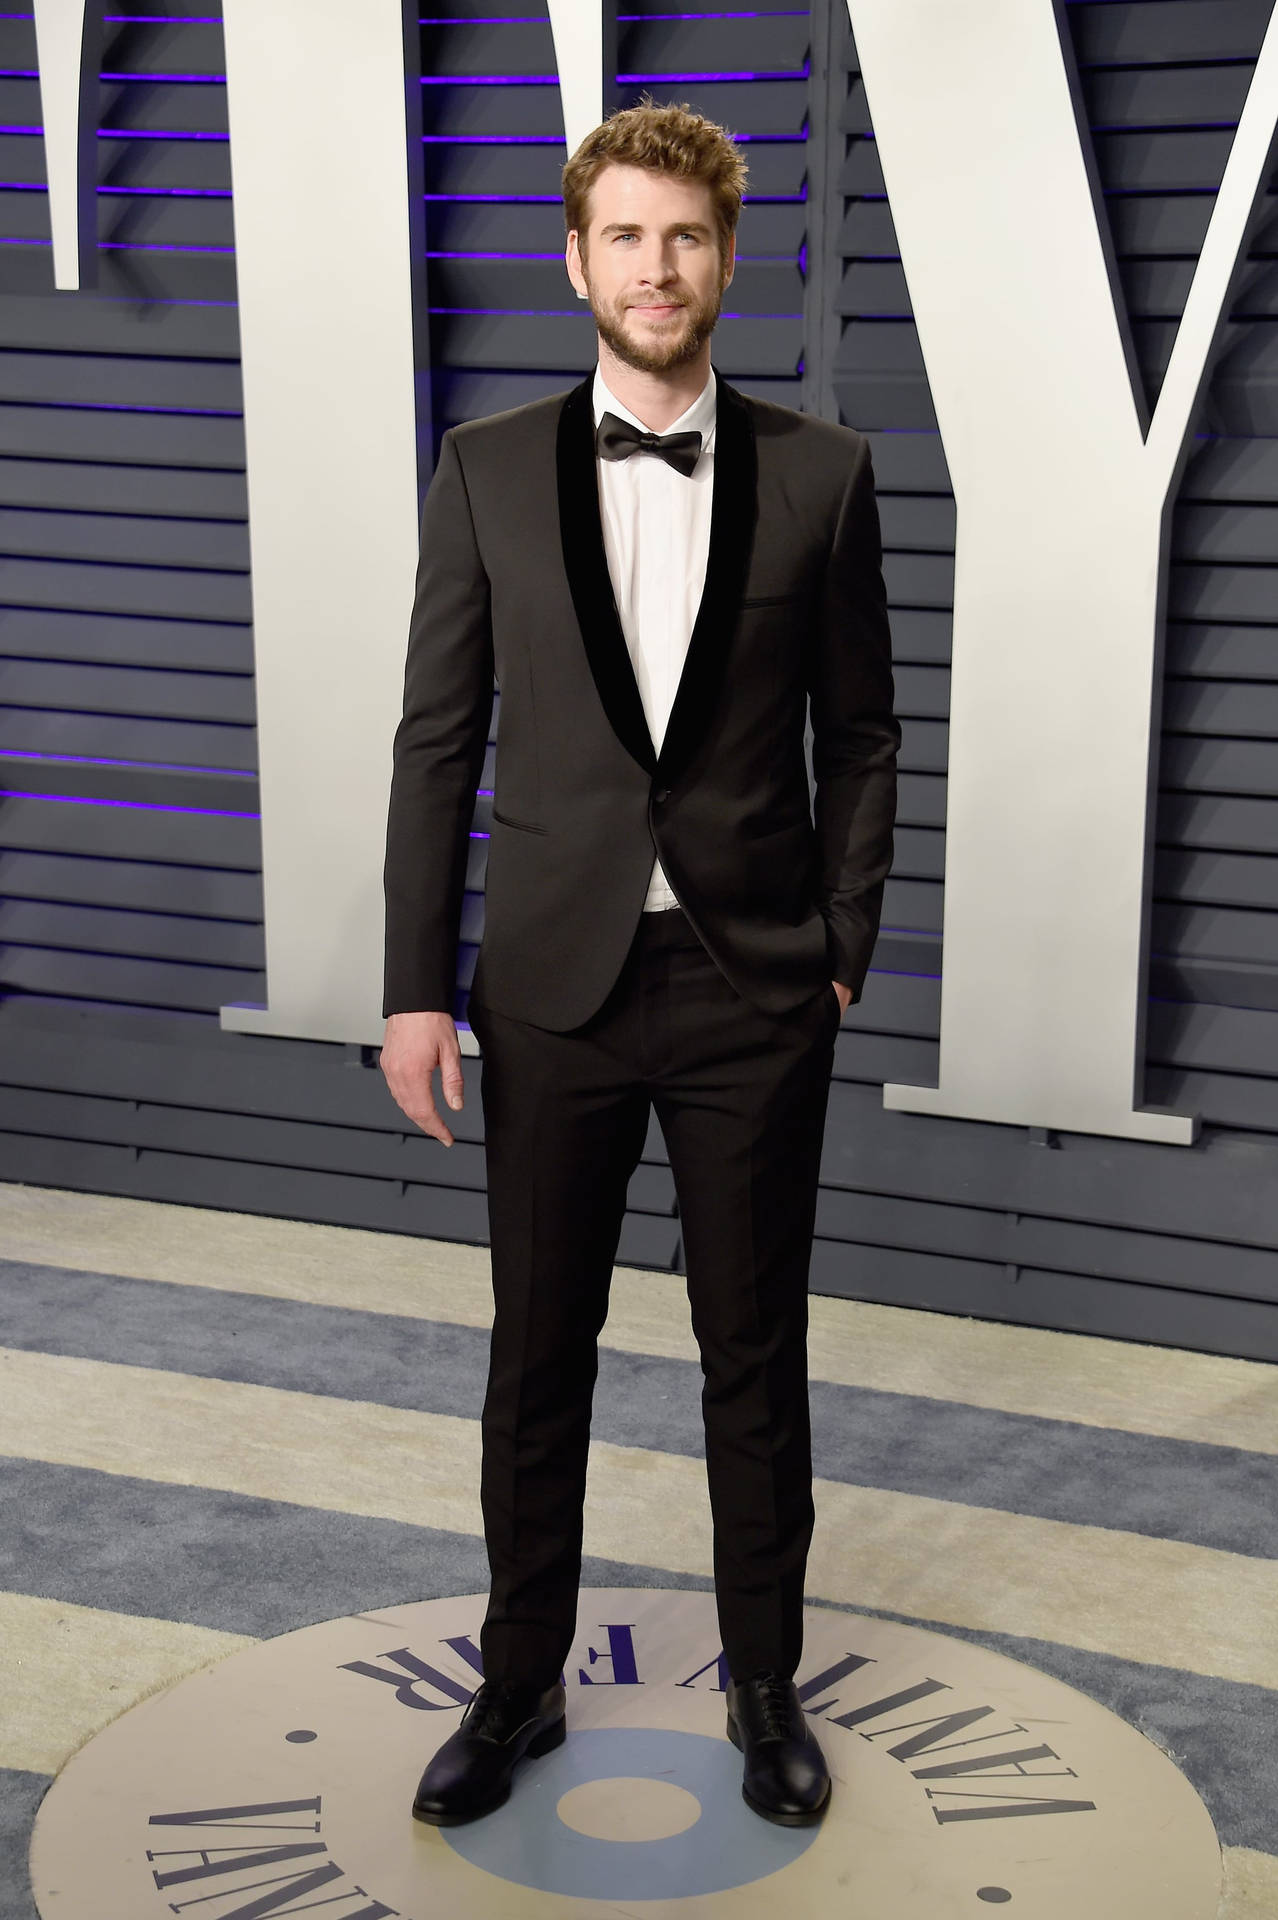 Liam Hemsworth Suit And Tie Wallpaper